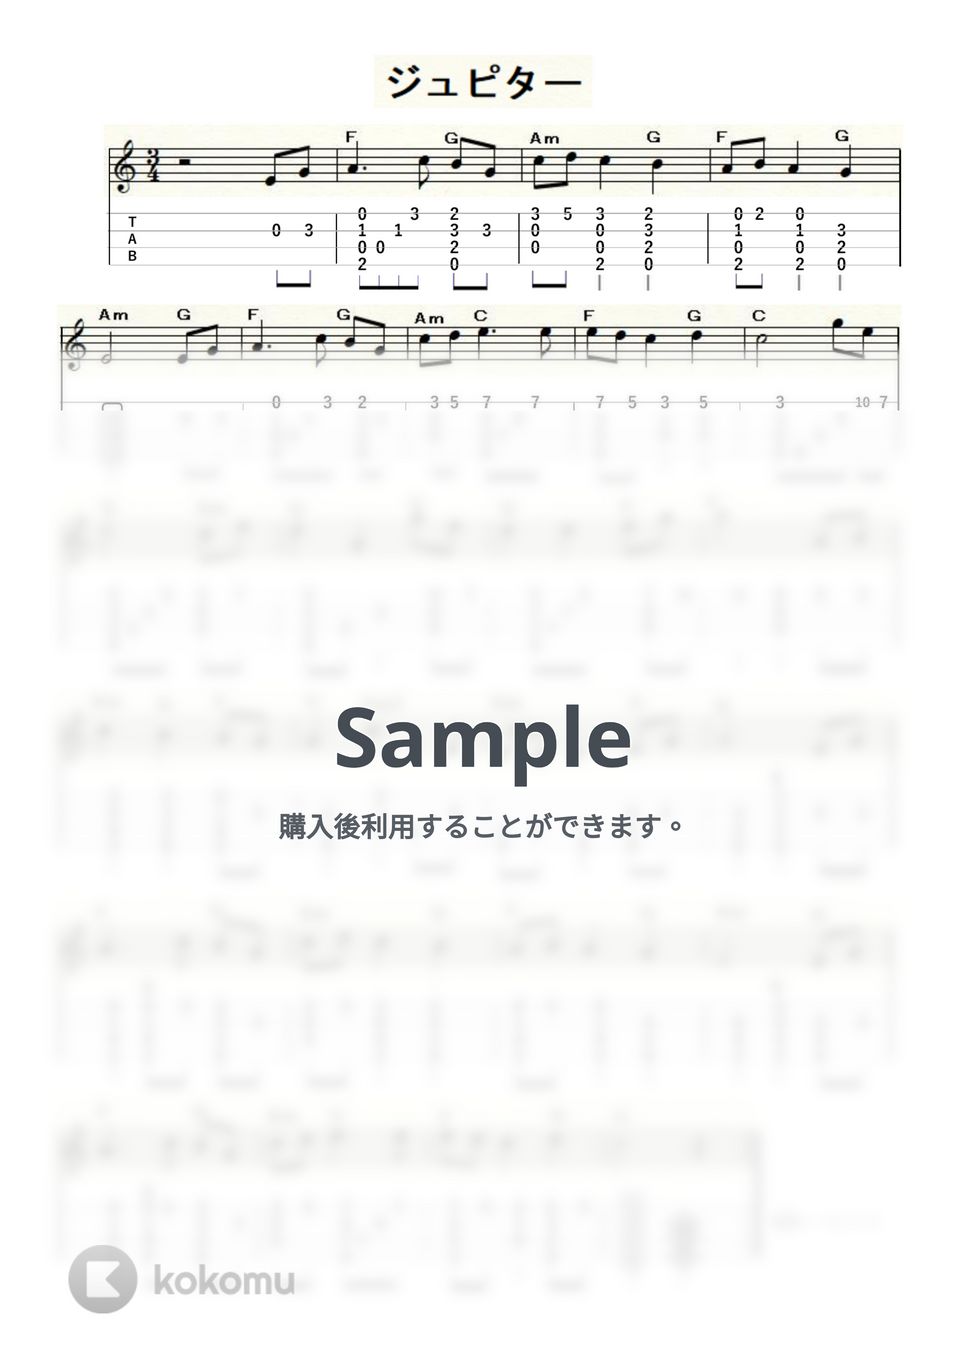 ホルスト - ジュピター (ｳｸﾚﾚｿﾛ / Low-G / 初級) by ukulelepapa